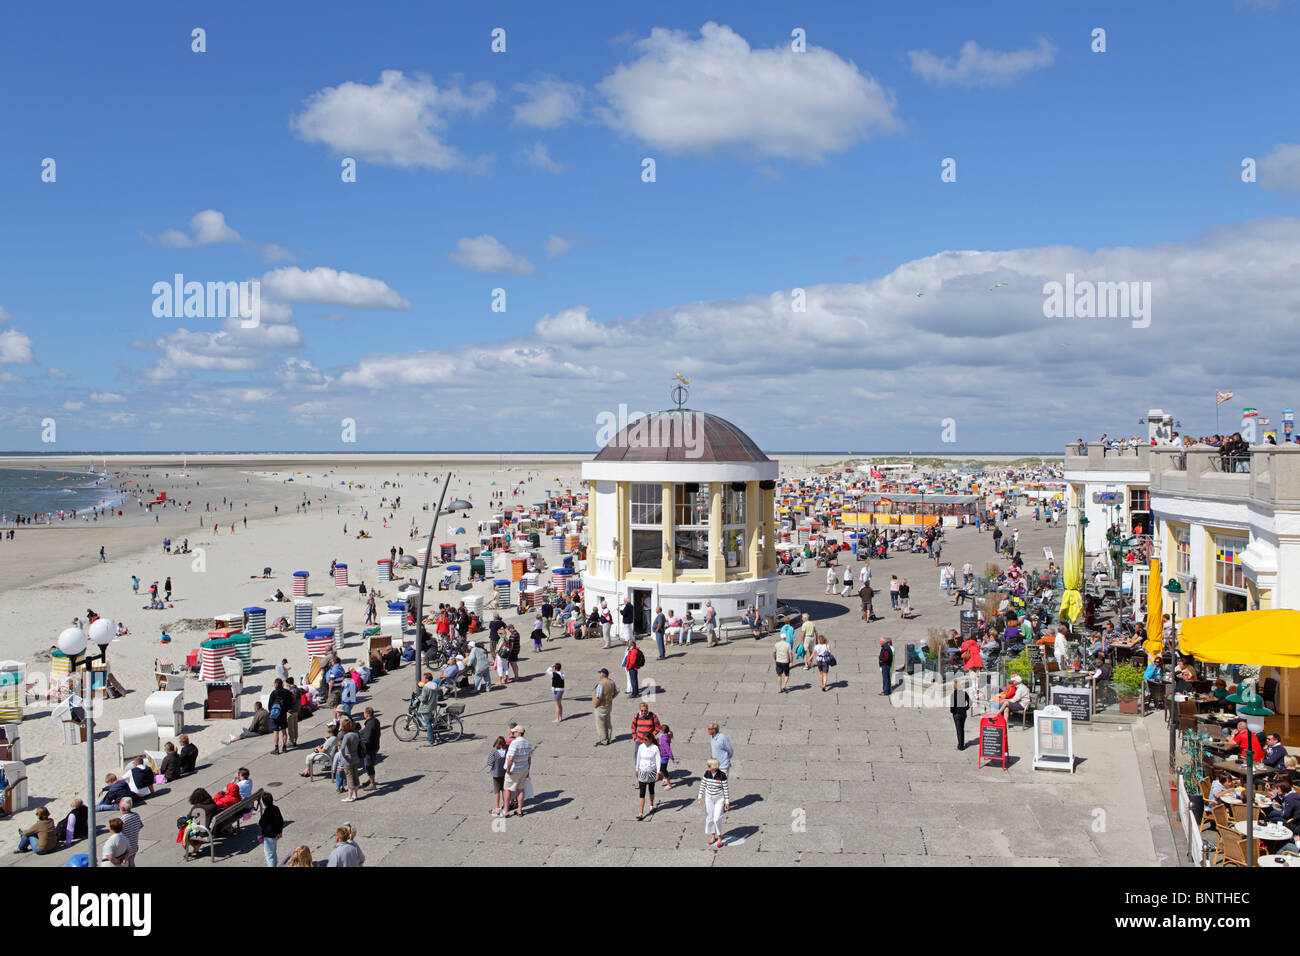 Pavillon am Strand von Borkum, Stadt, Insel Borkum, Ostfriesland, Nordseeküste, Niedersachsen, Deutschland Stockfoto